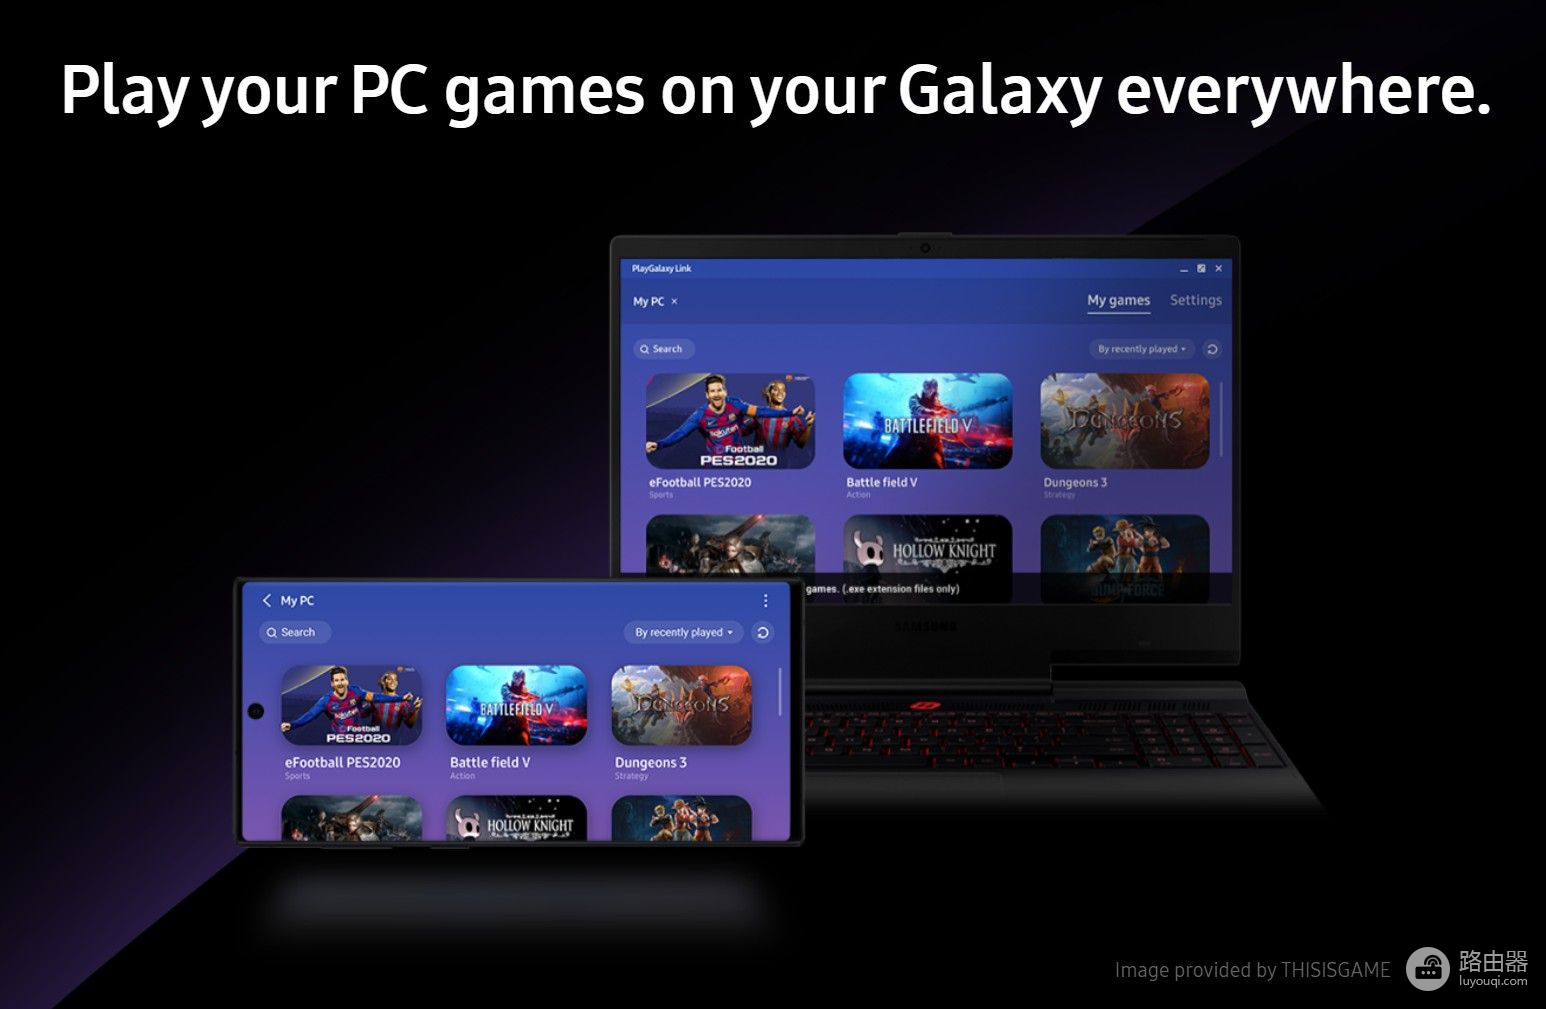 三星推出Galaxy手机串流PC游戏应用